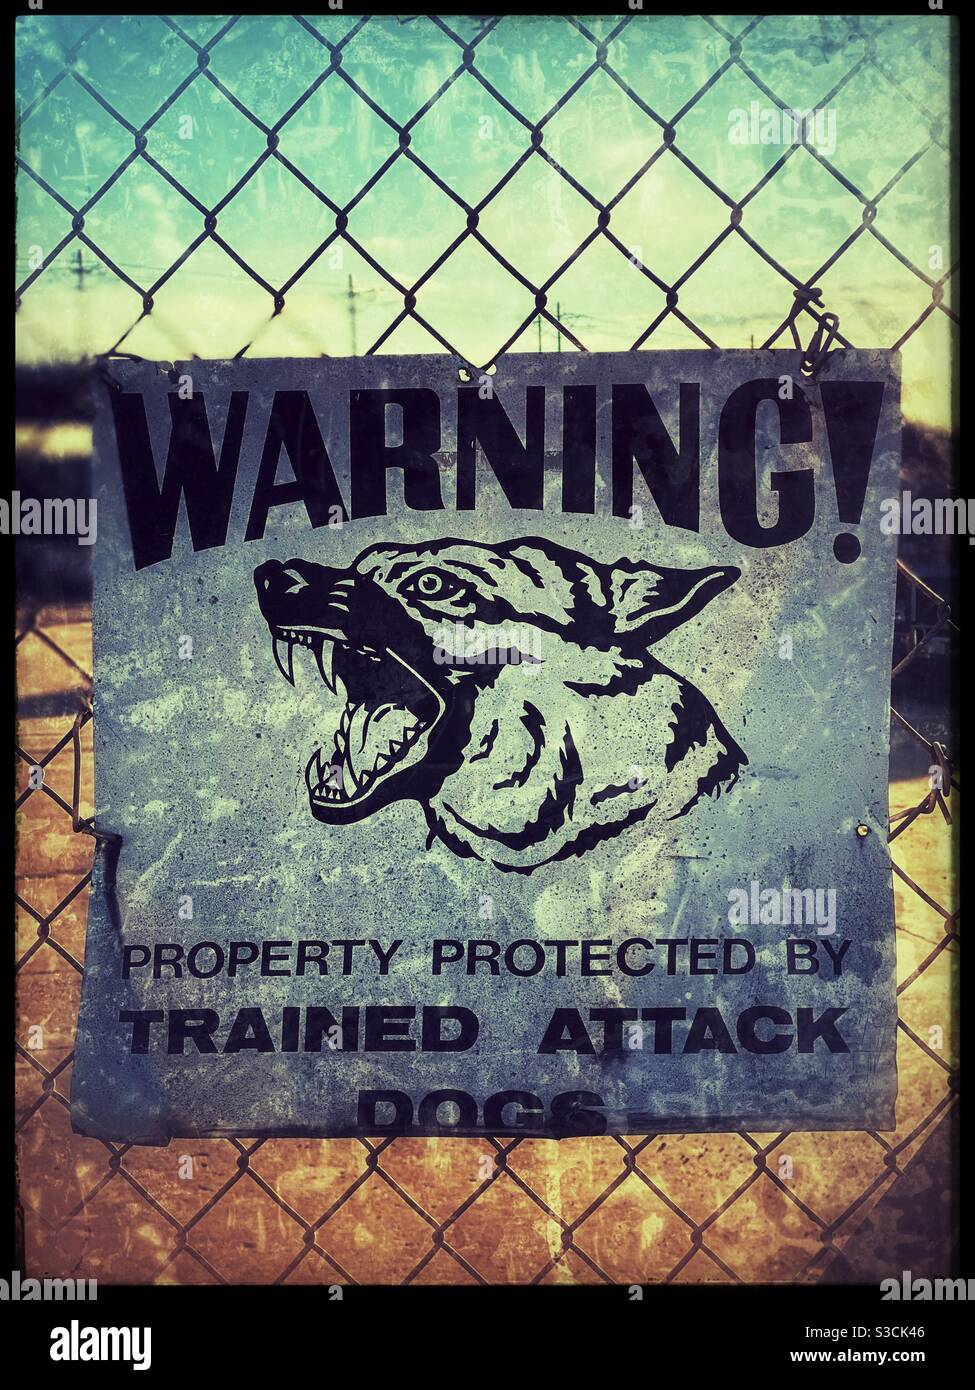 Vicious dog warning sign Stock Photo